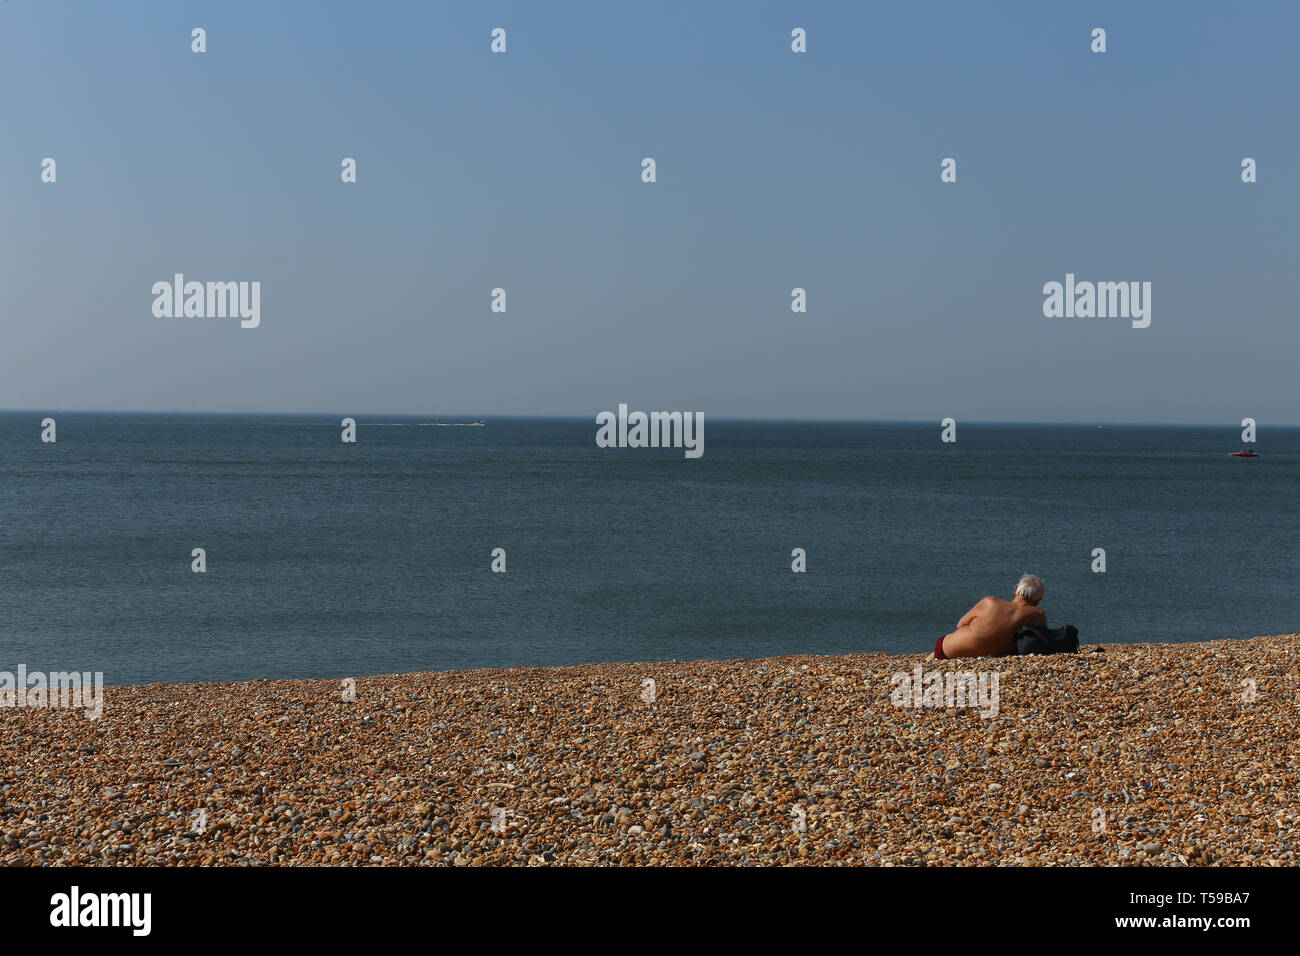 Ältere Menschen am Strand im Meer Richtung suchen. Brighton. Großbritannien Stockfoto